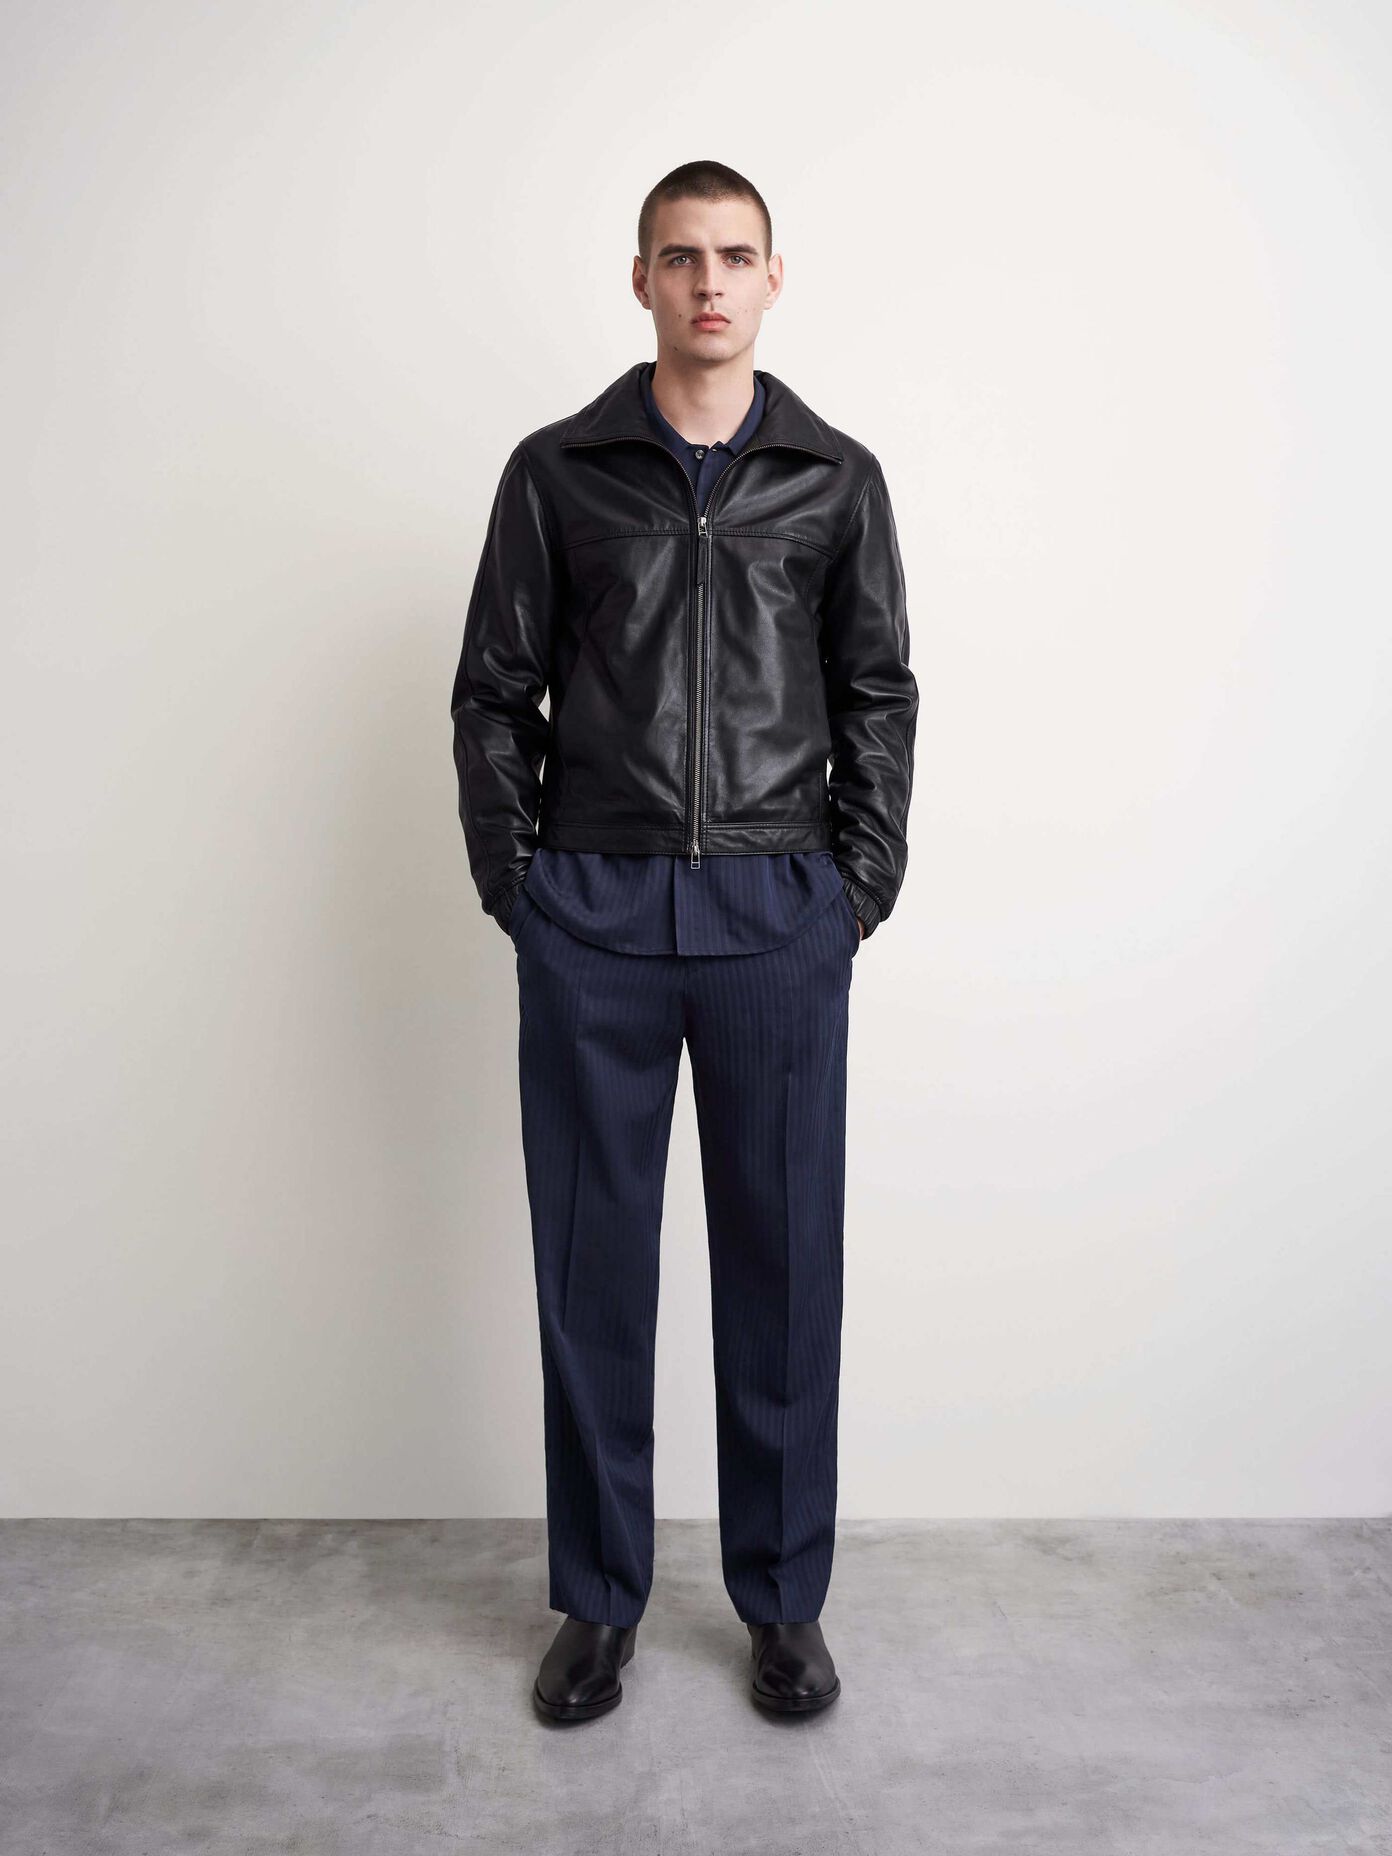 Men’s outerwear. Coats, jackets & vests | Tiger of Sweden